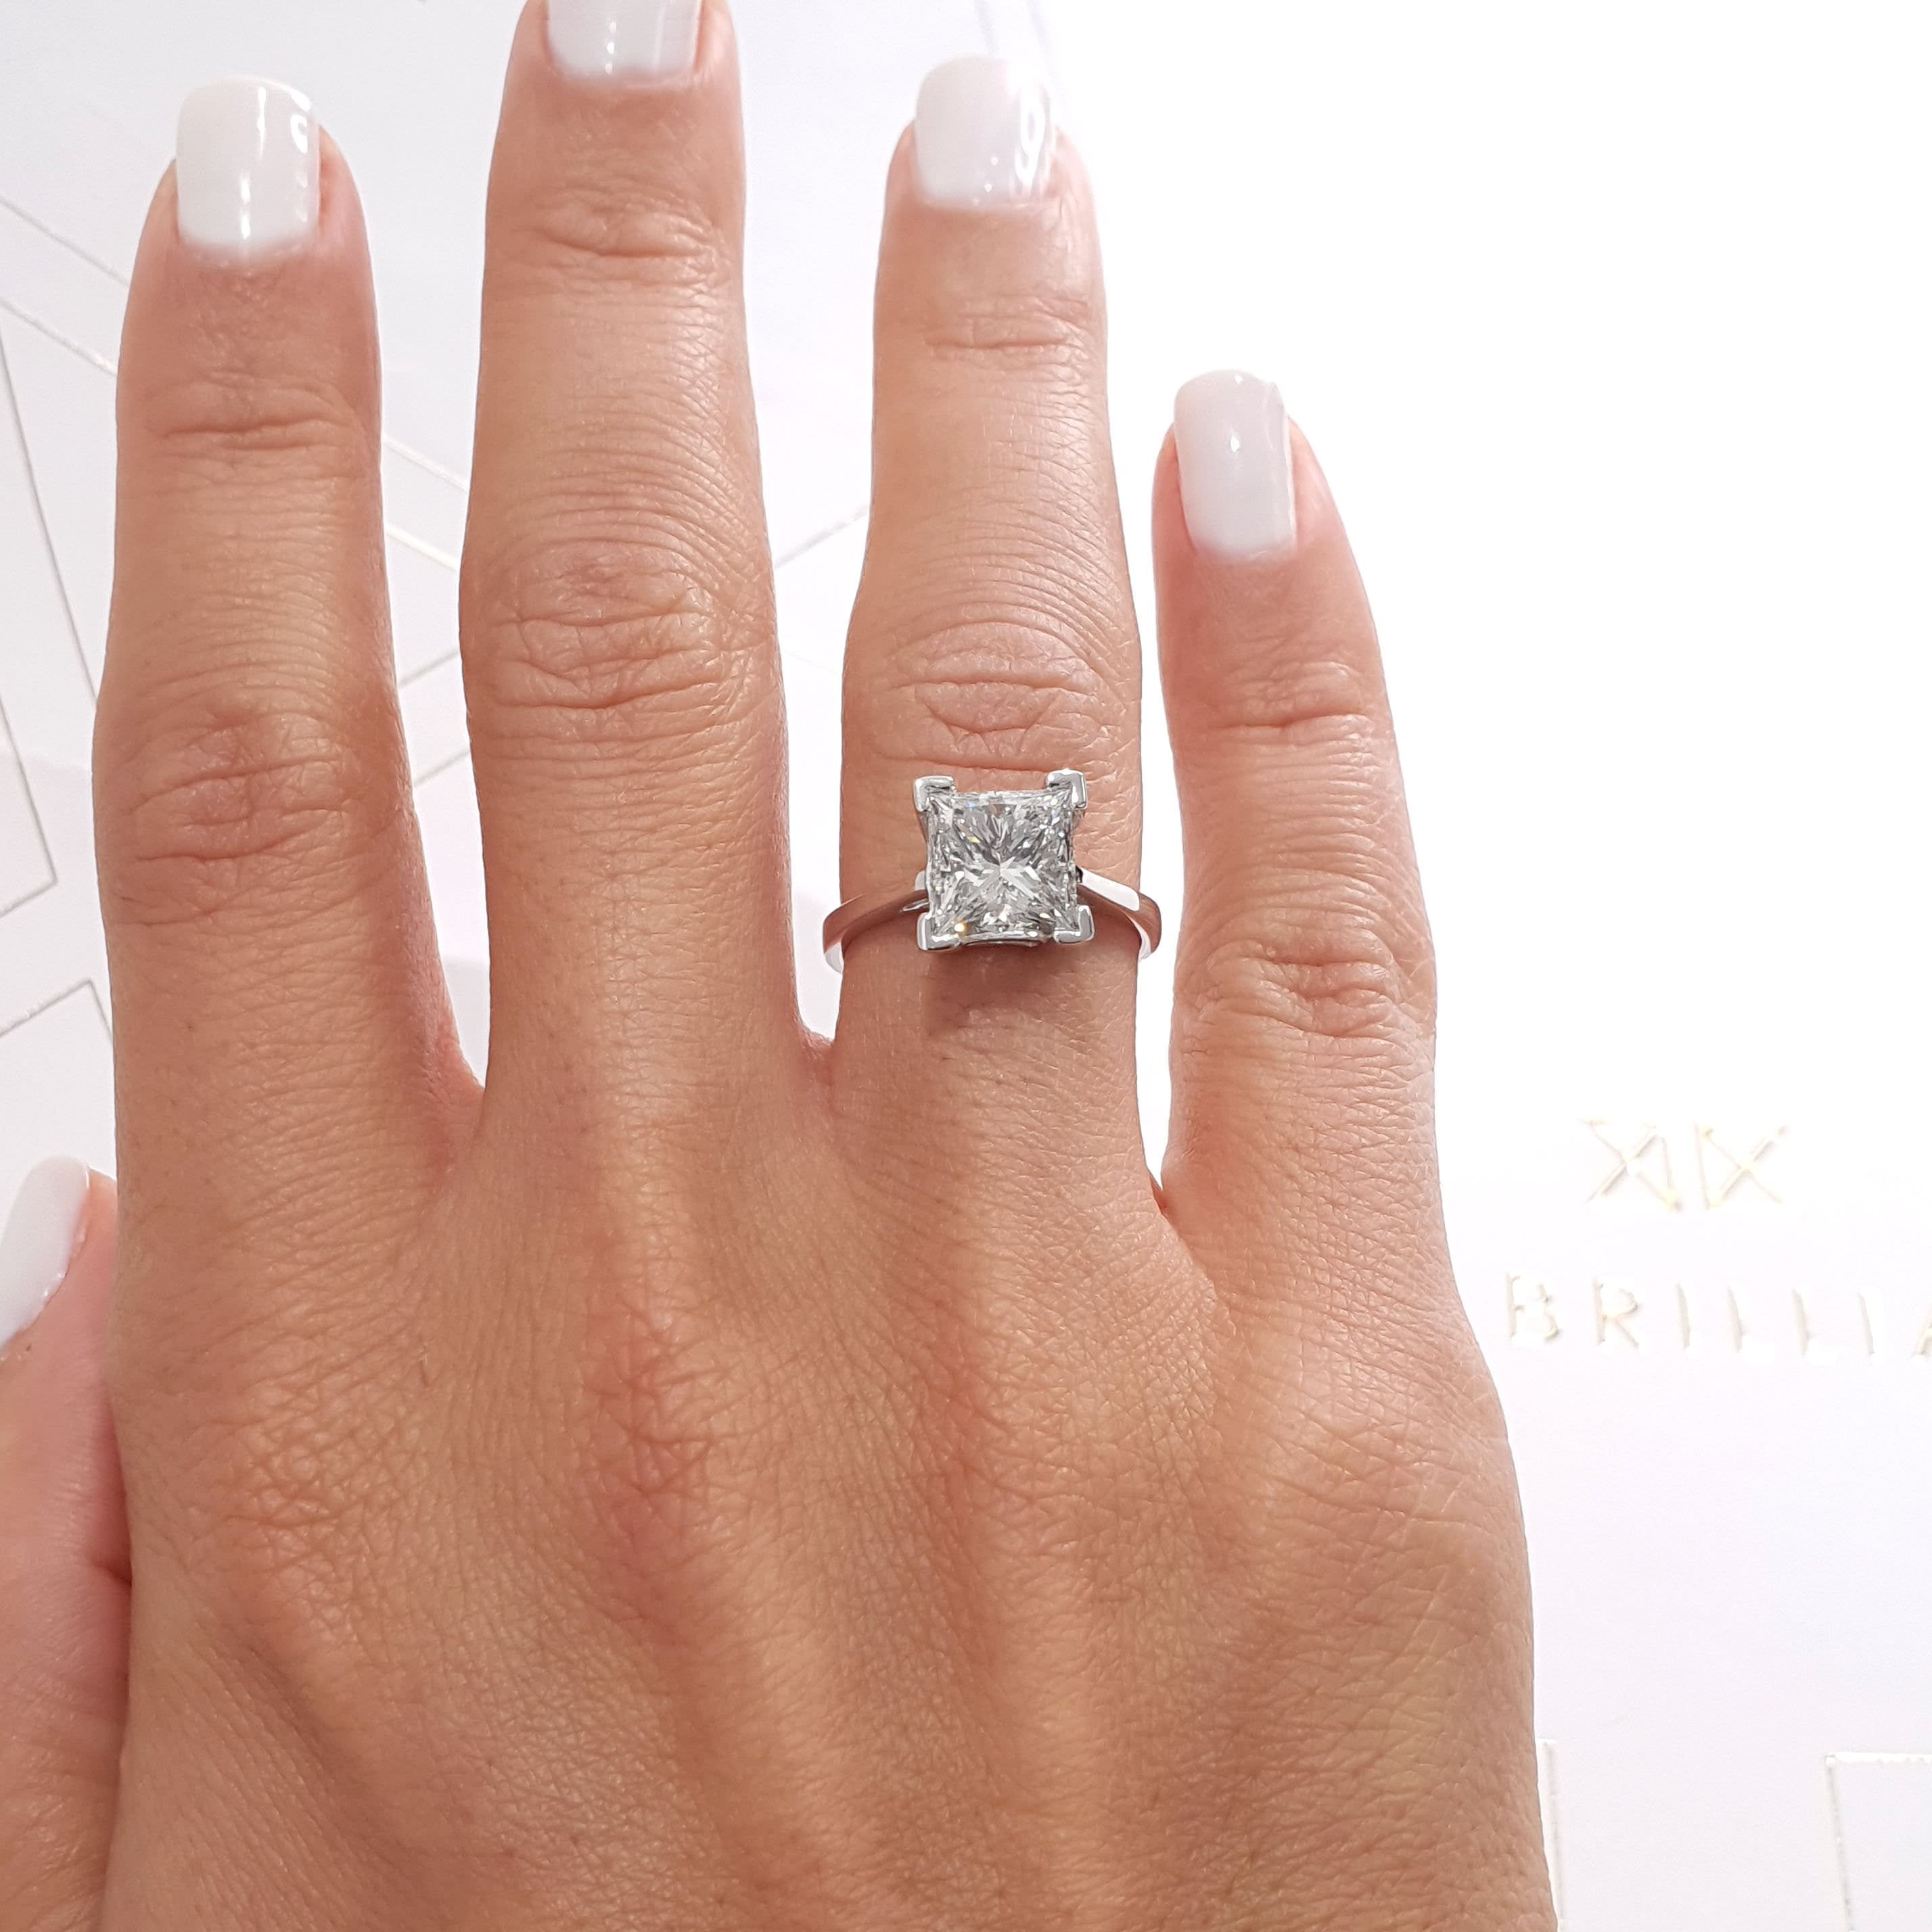 Ella Diamond Engagement Ring   (3 Carat) -18K White Gold